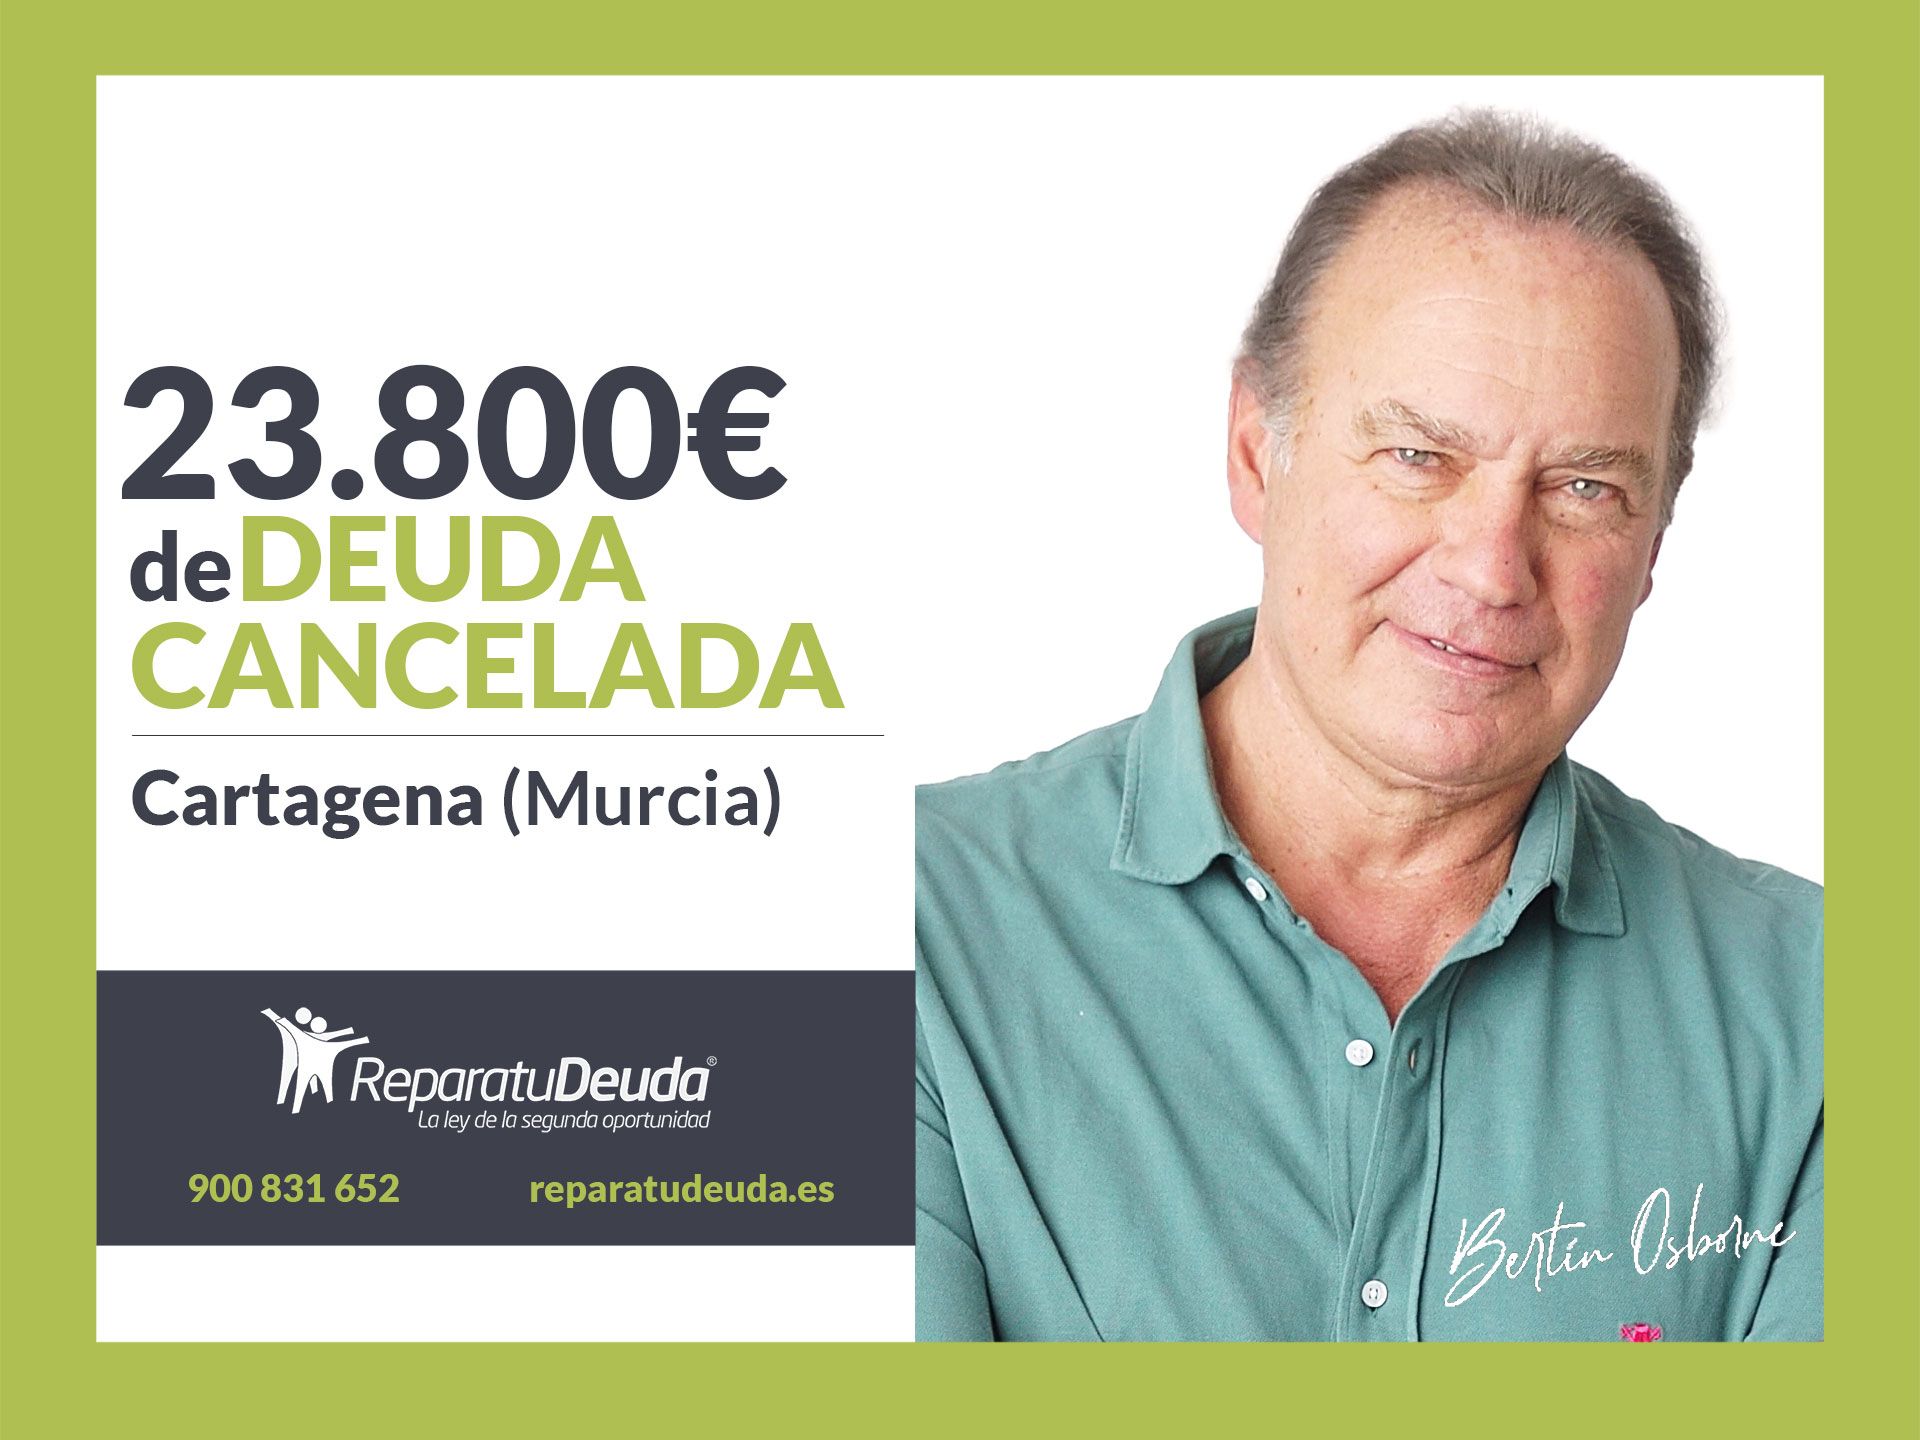 Repara tu Deuda Abogados cancela 23.800? en Cartagena (Murcia) con la Ley de Segunda Oportunidad